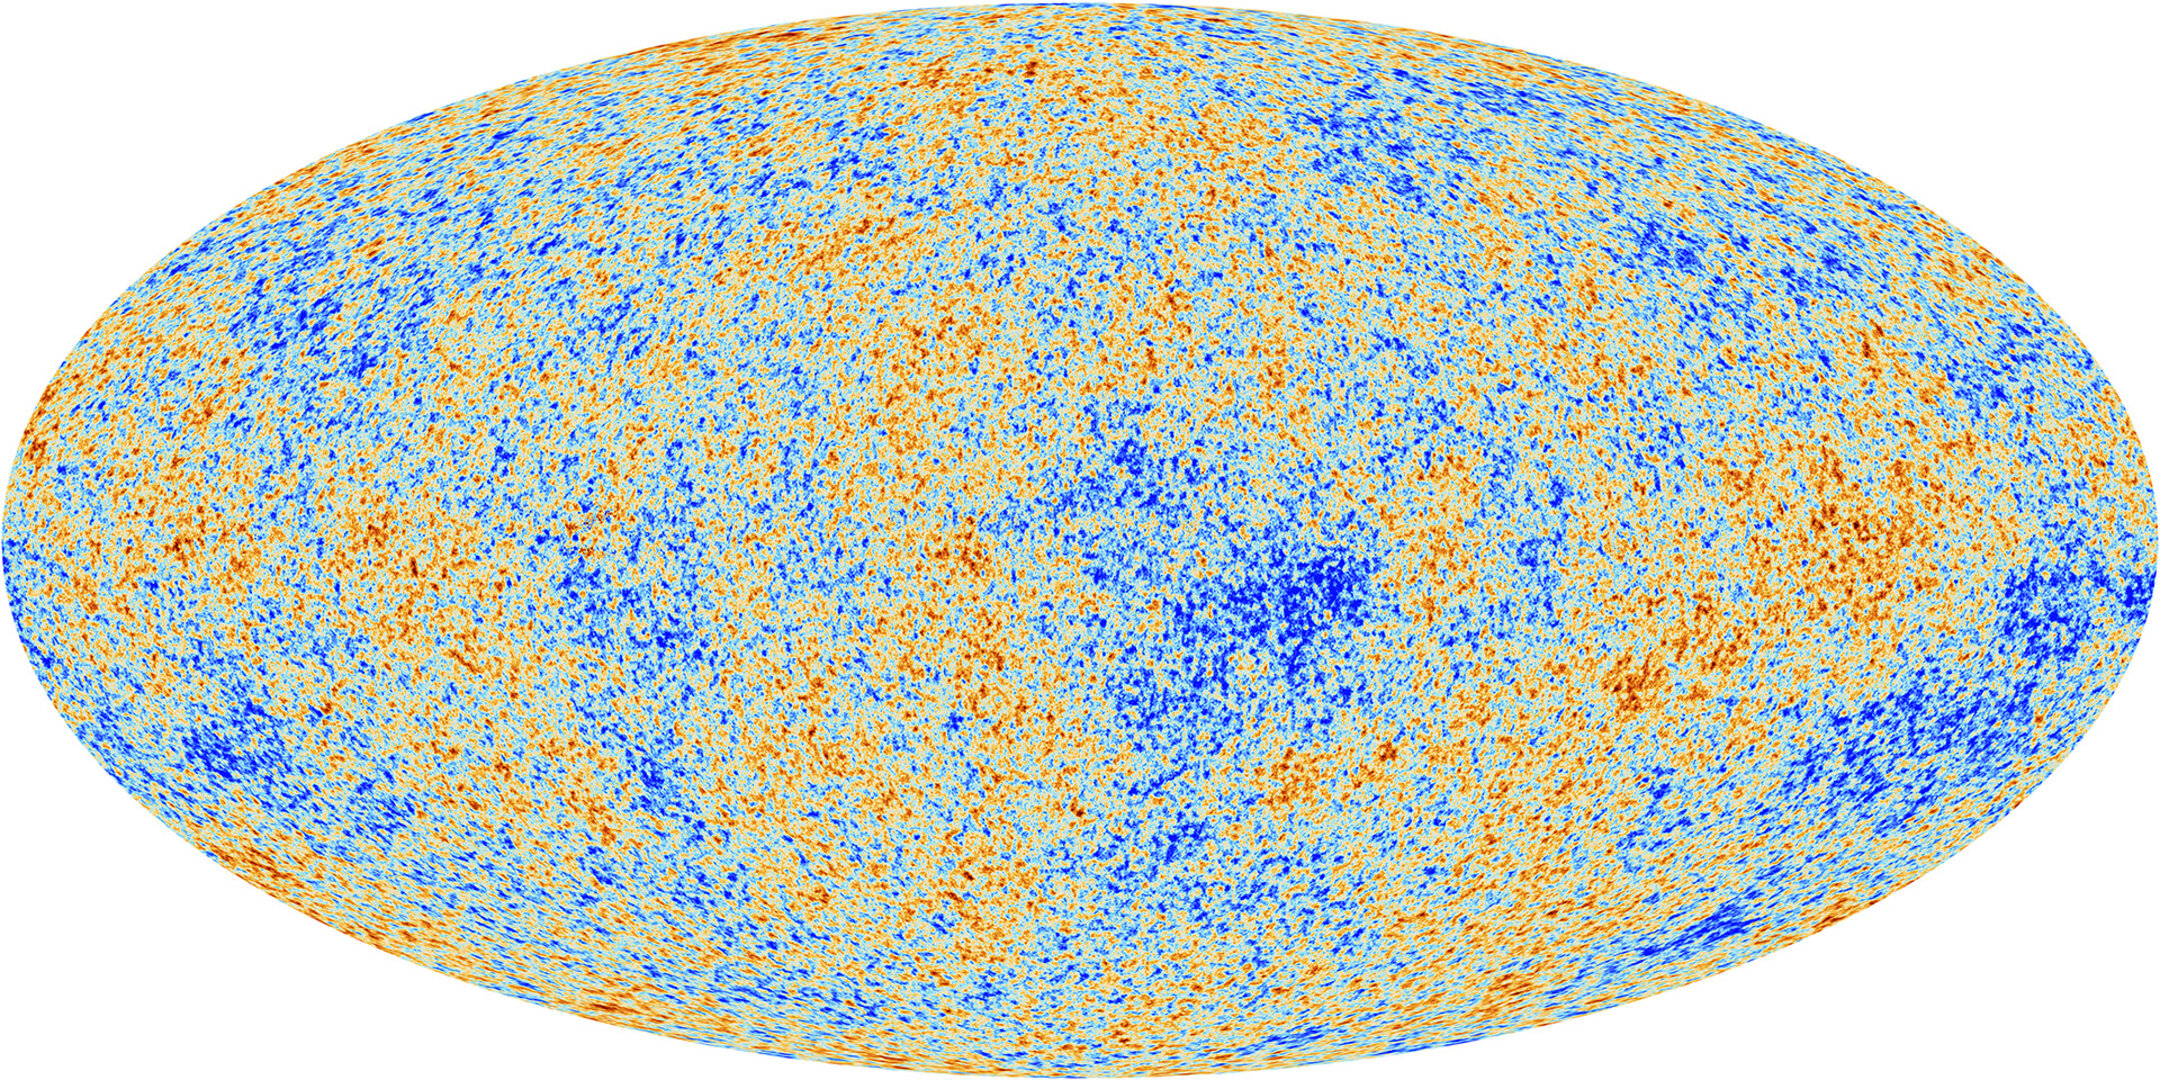 Le fond diffus cosmologique vu par Planck